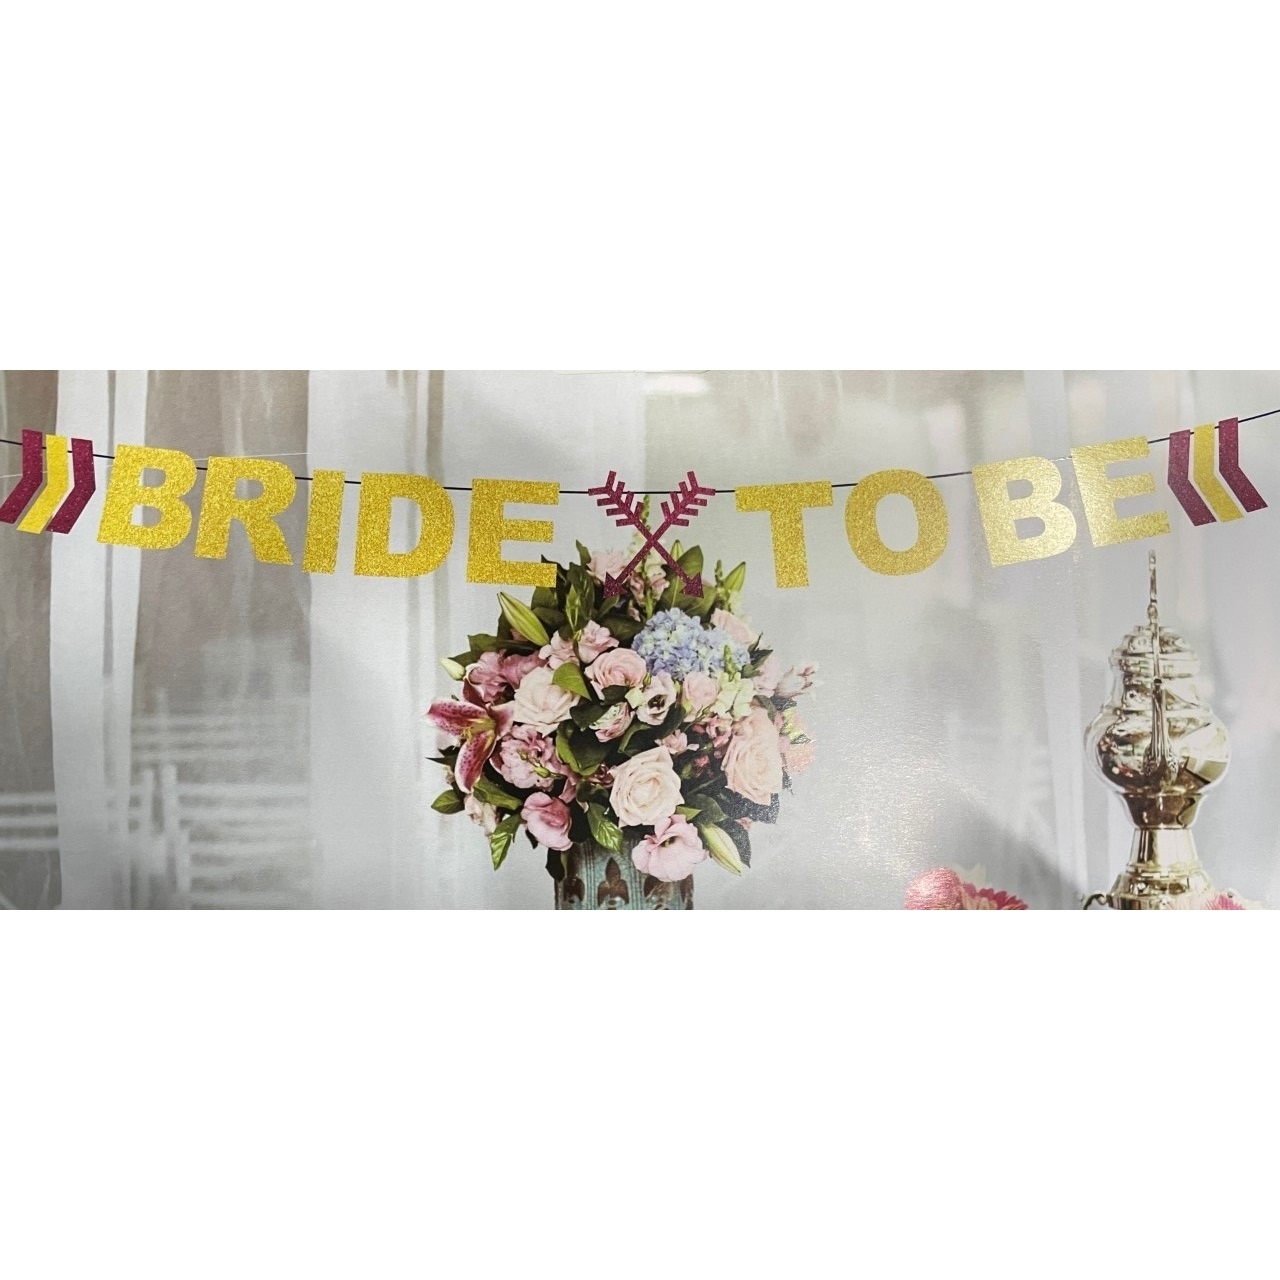 ondergoed bank speer Bride To Be Slinger - Bruiloft Decoratie - Wedding Banner - CJchoice.nl